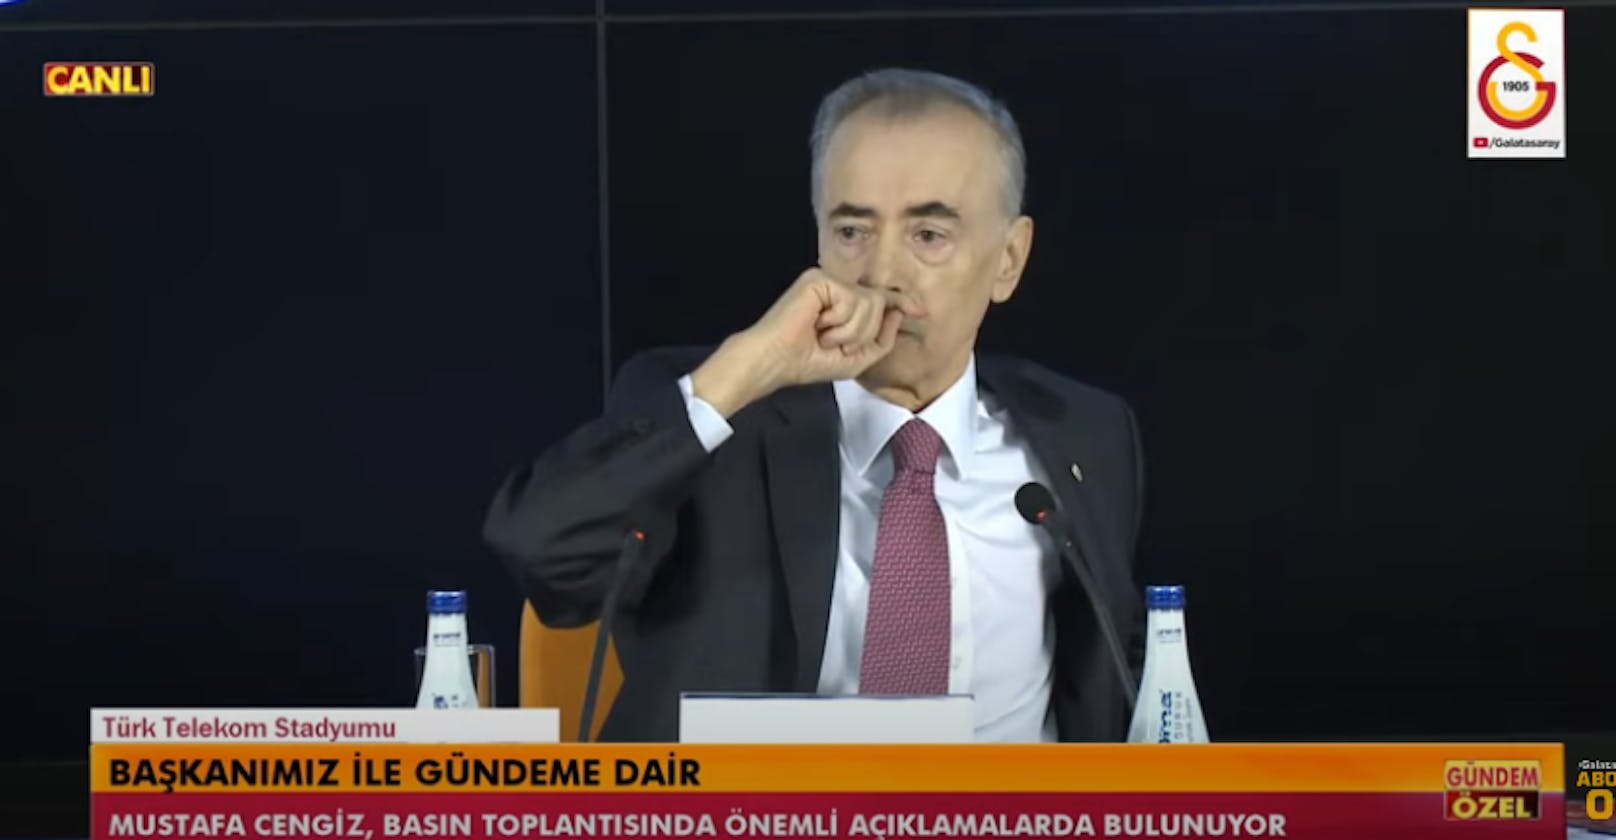 Mustafa Cengiz bei seiner legendären Pressekonferenz